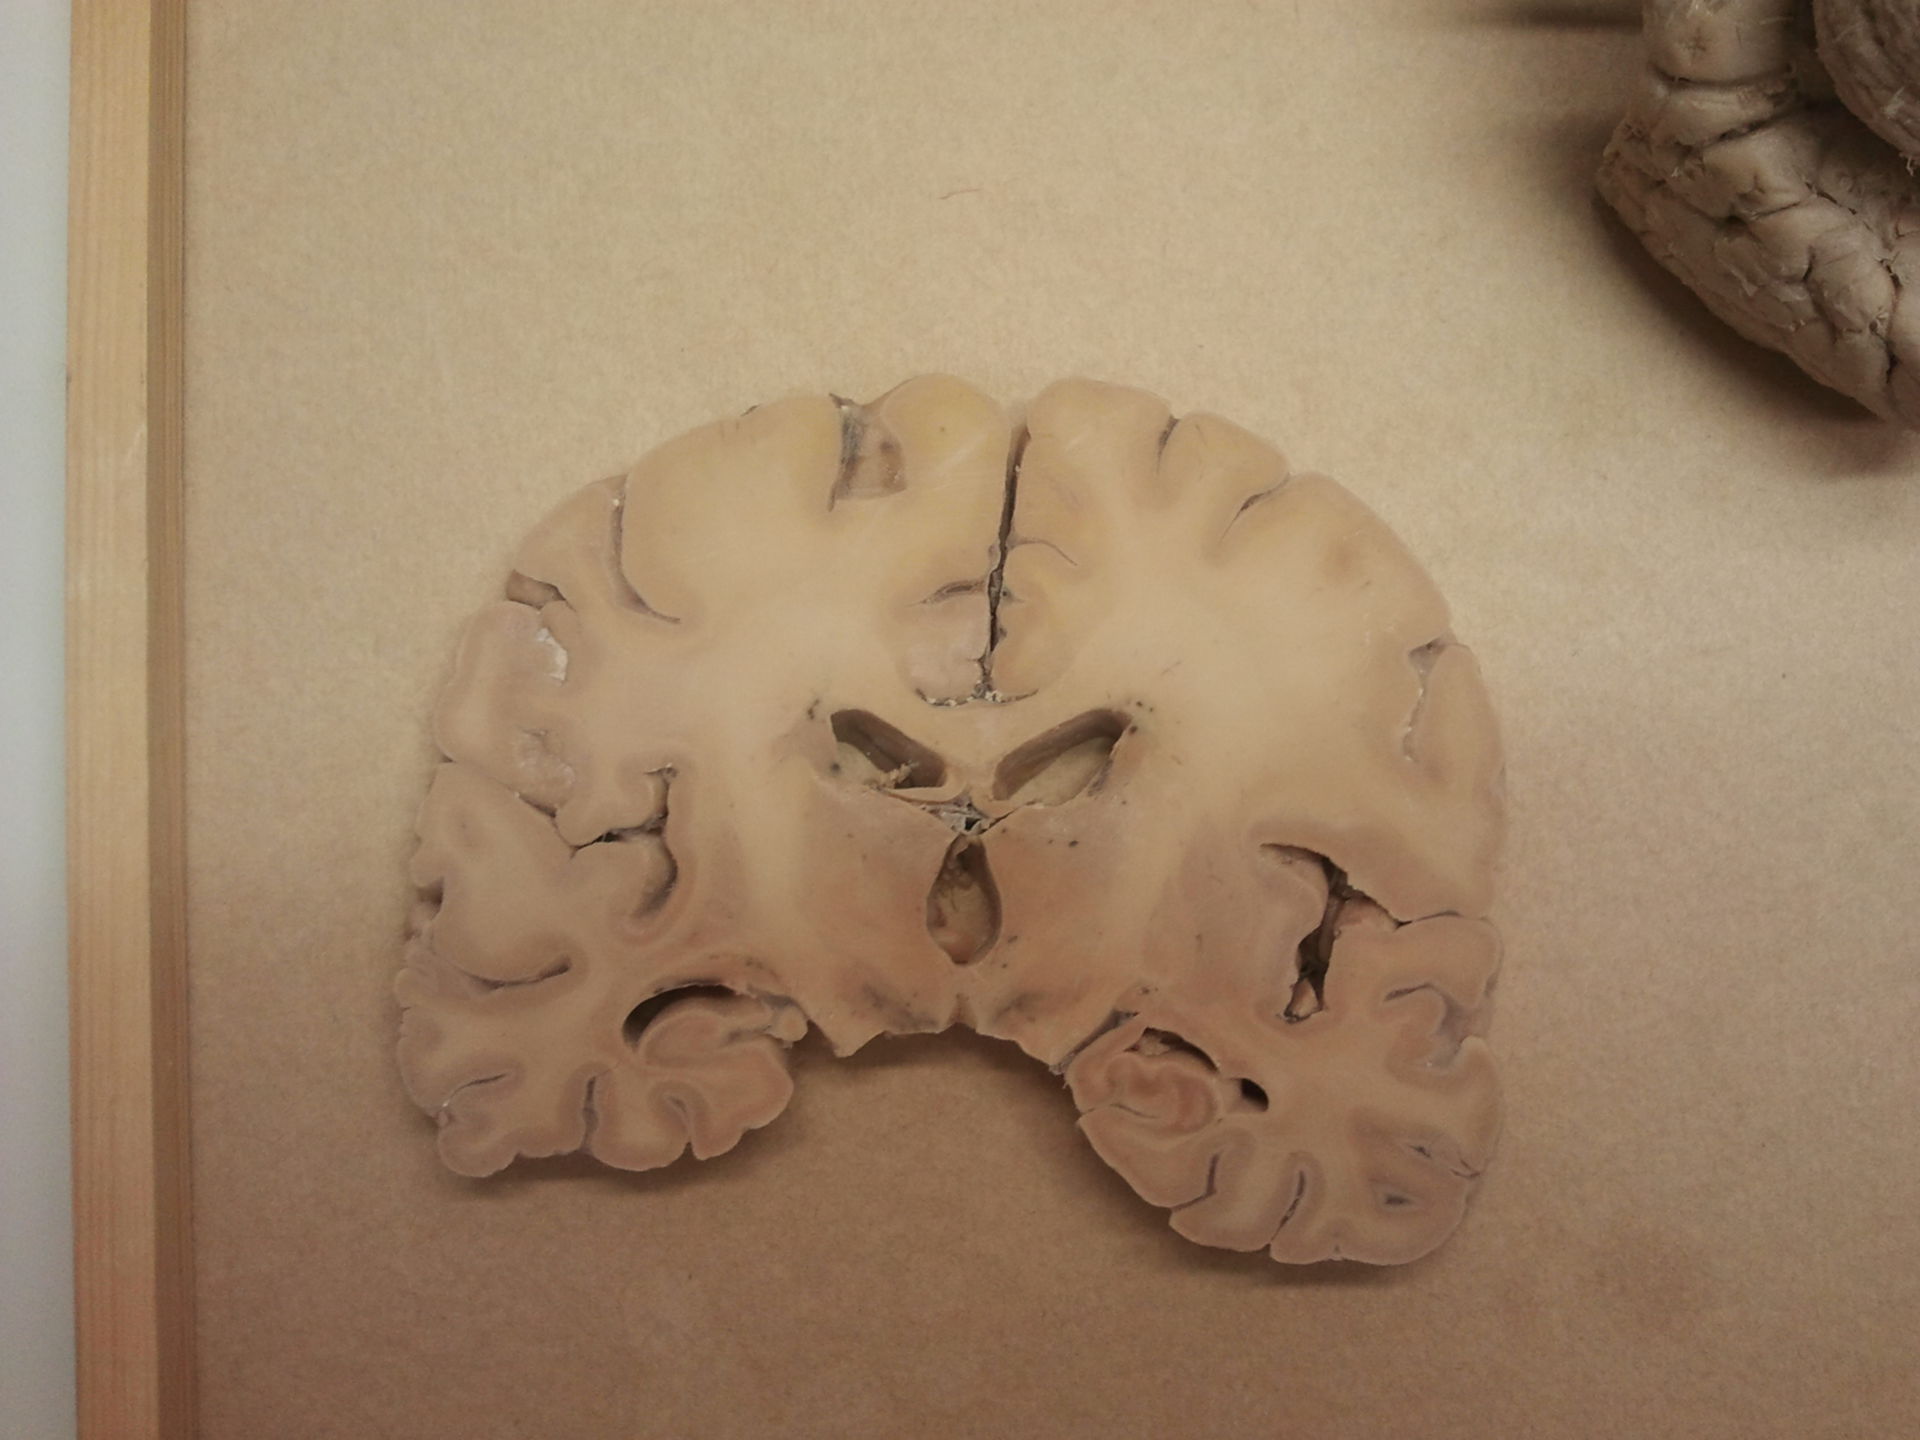 Sezione del cervello